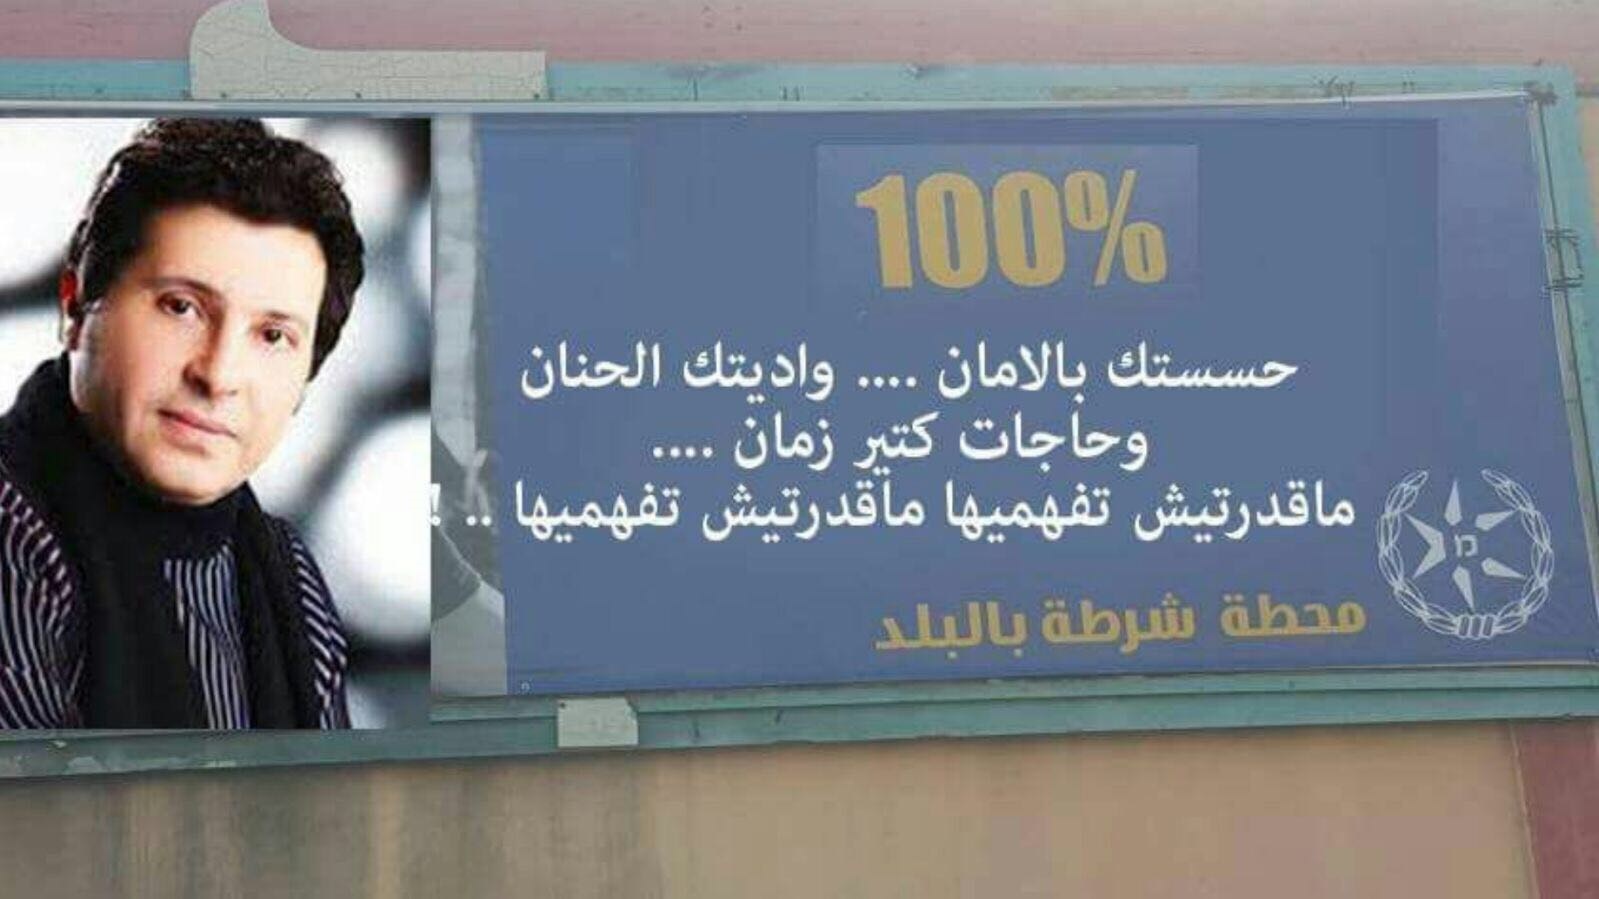  الشرطة الإسرائيلية تسخر اغنيات هاني شاكر لخدمة اغراضها